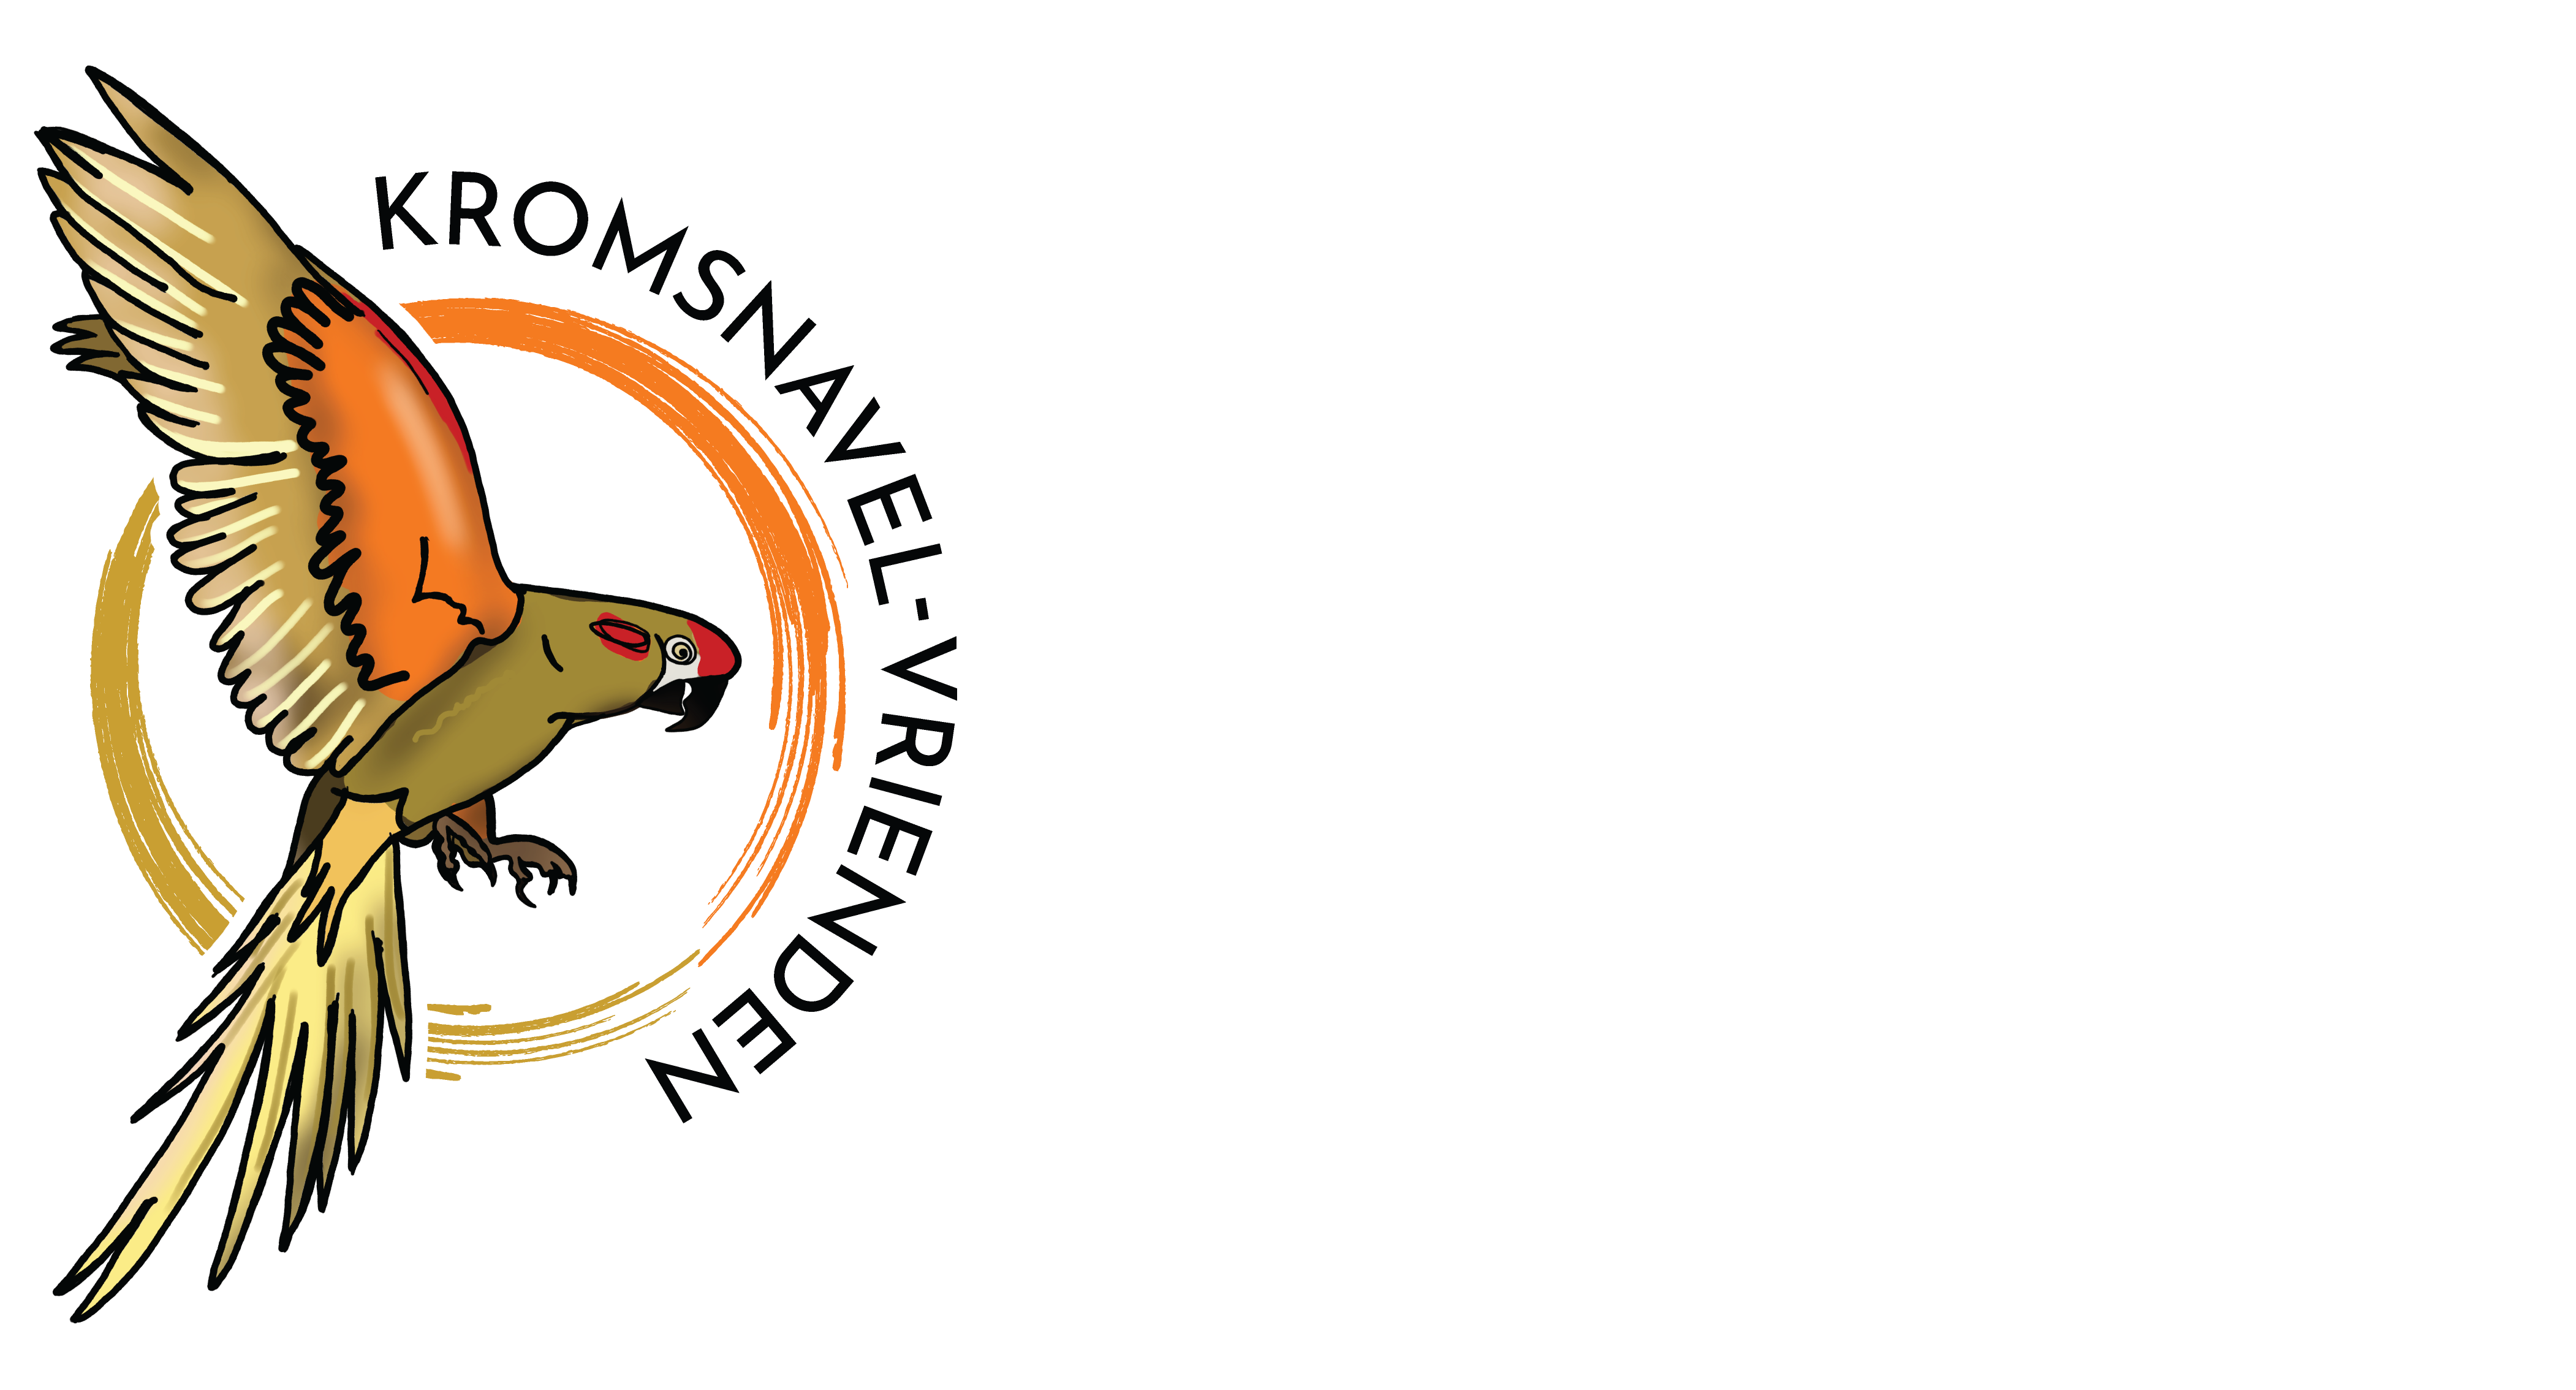 Free flight cursus